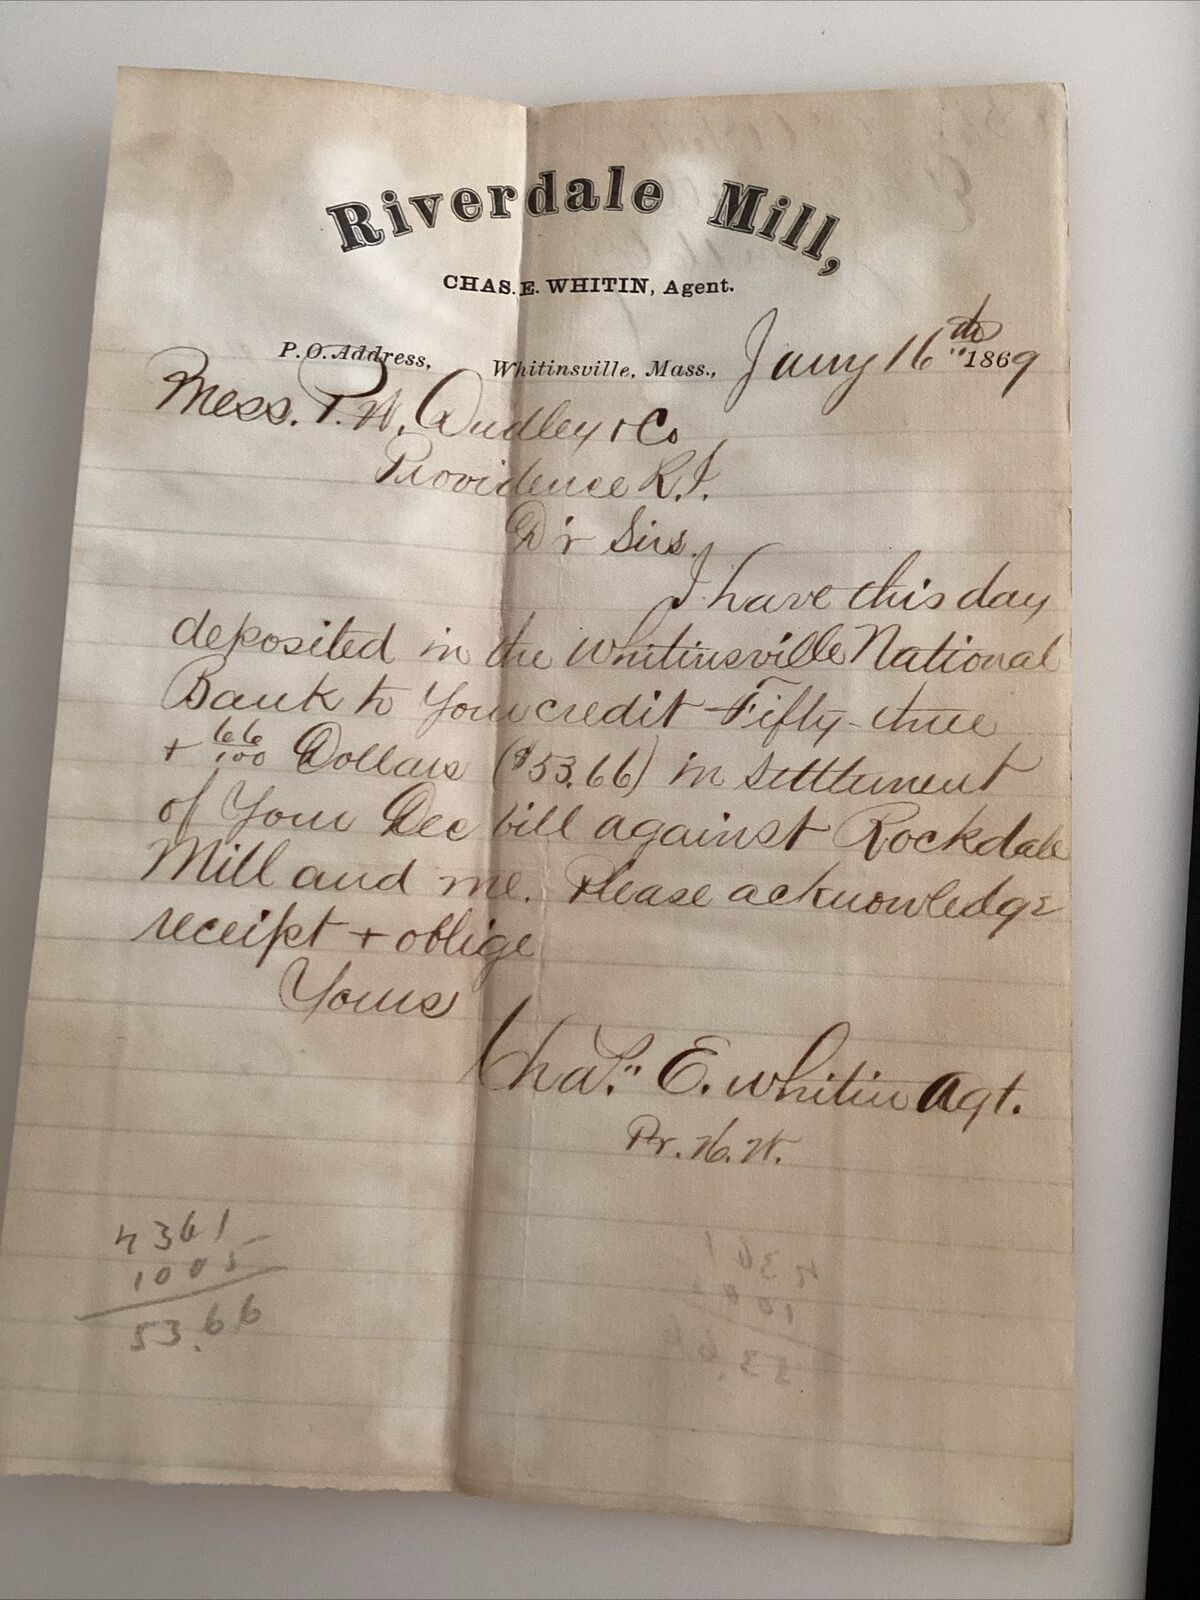 1869 Handwritten Letter Riverdale Mill Chas E Whitin Whittinsville Massachusetts